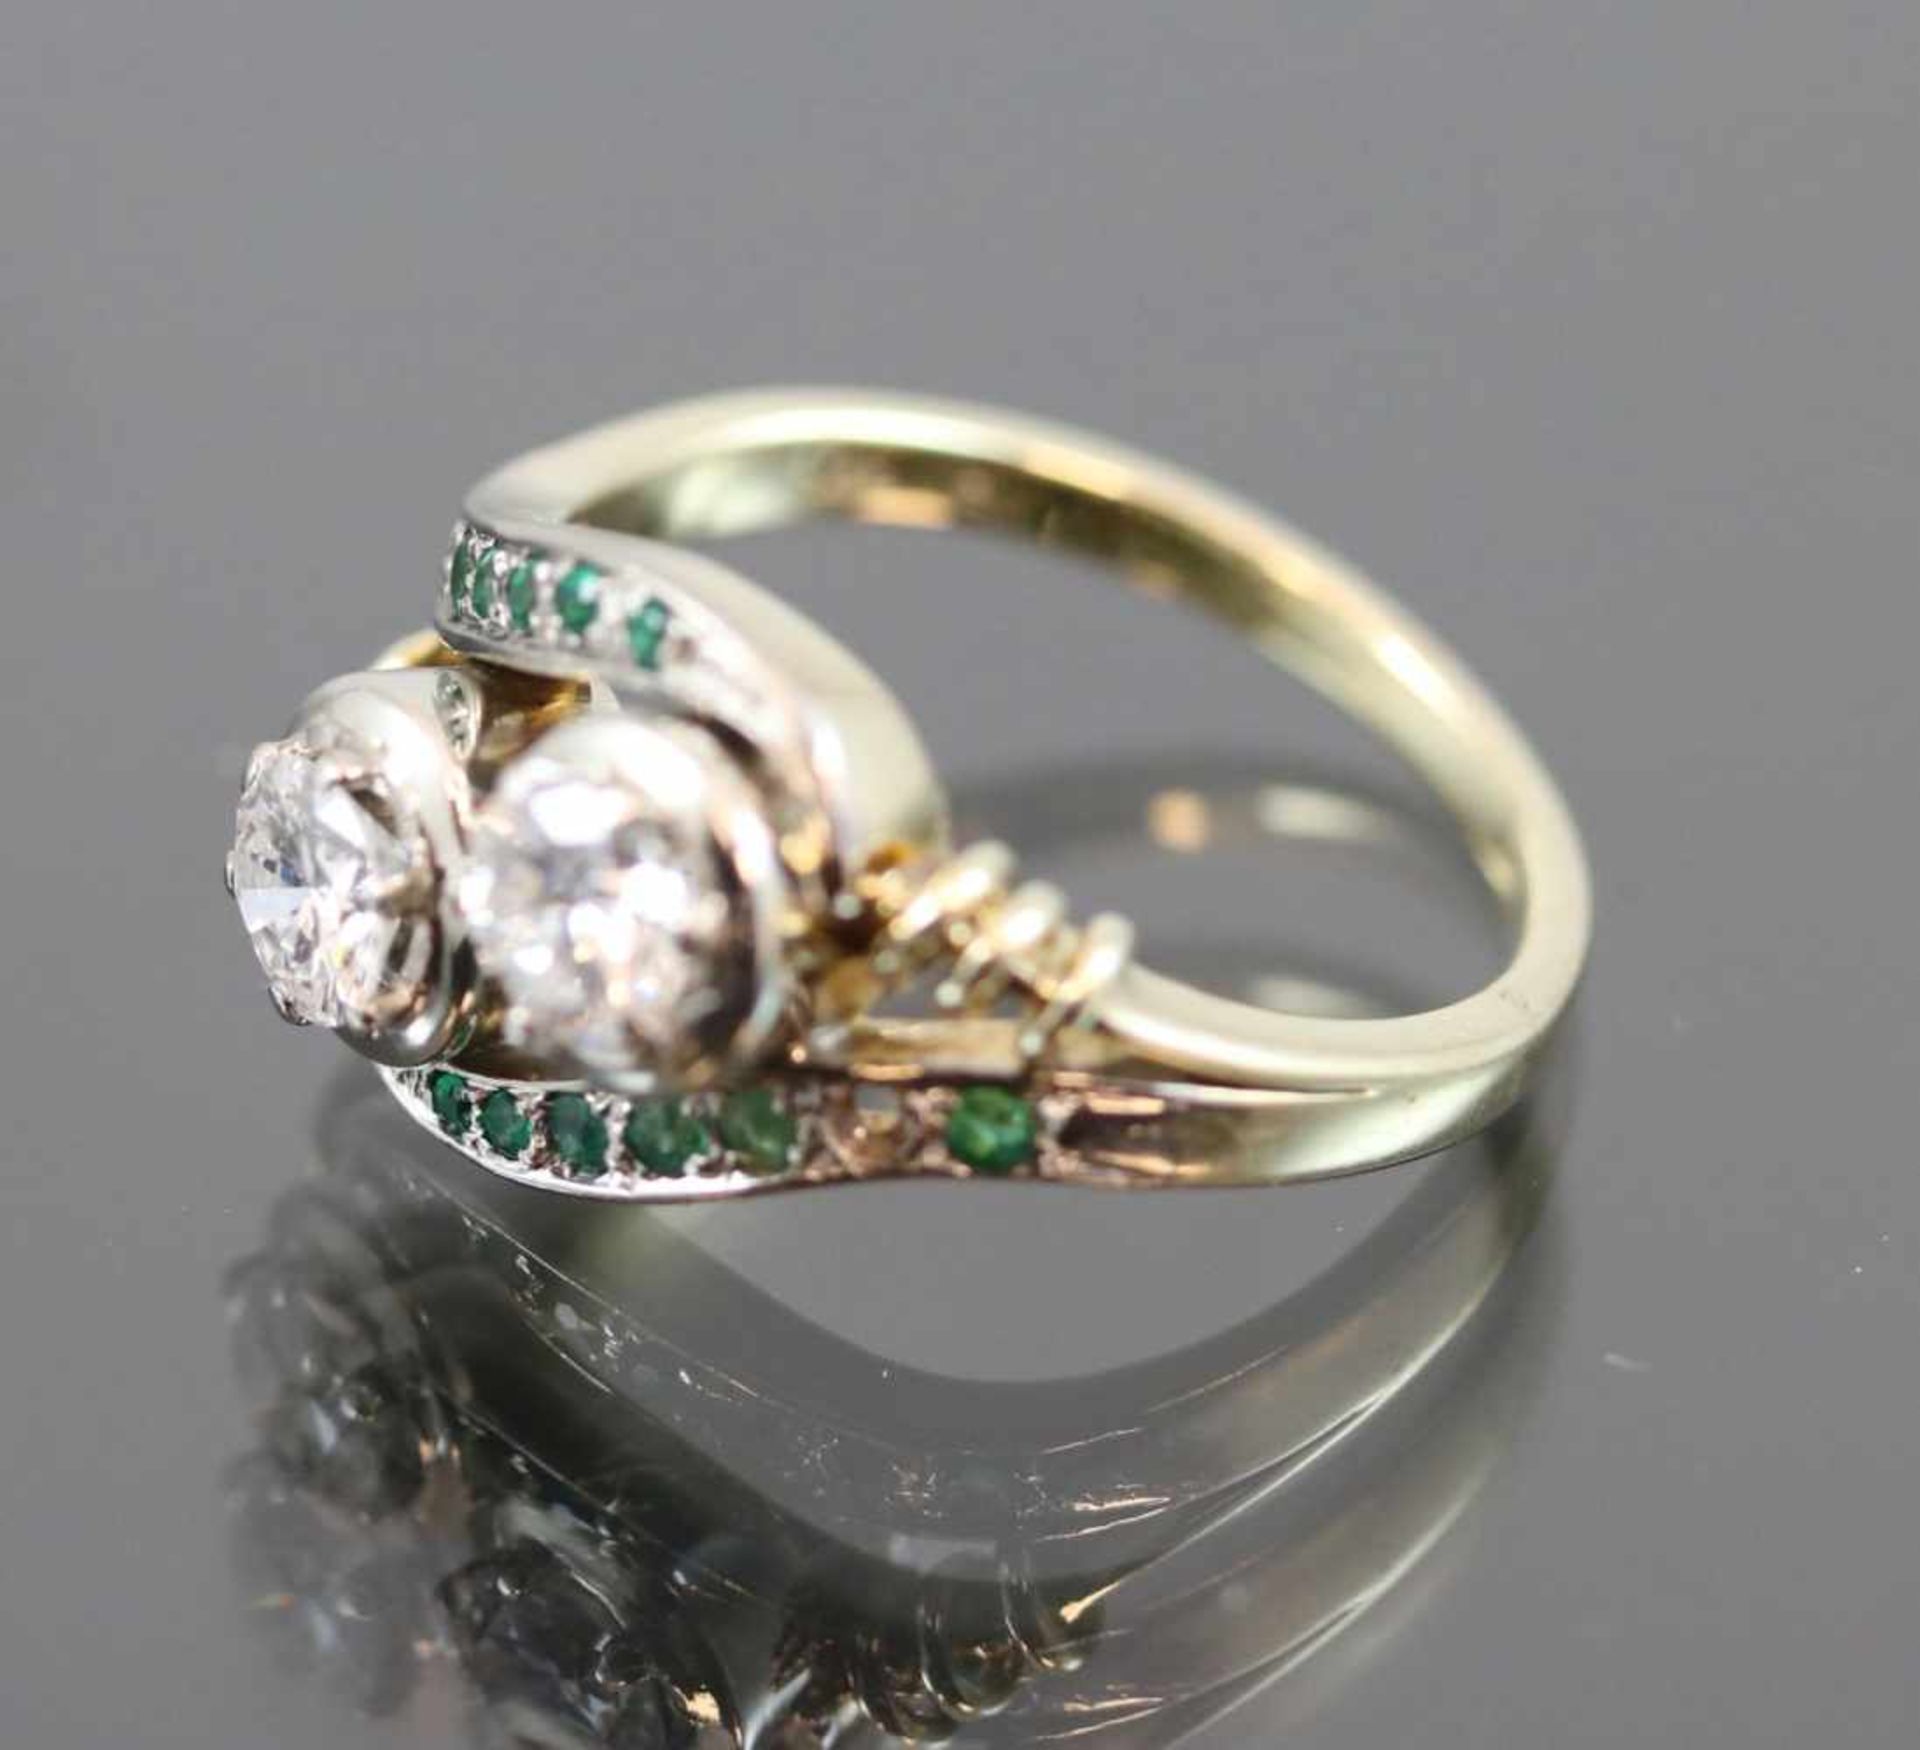 Brillant-Smaragd-Ring, 585 Gold6,3 Gramm 2 Brillanten, 0,80 ct., tw/vsi. Ringgröße: 58Schätzpreis: